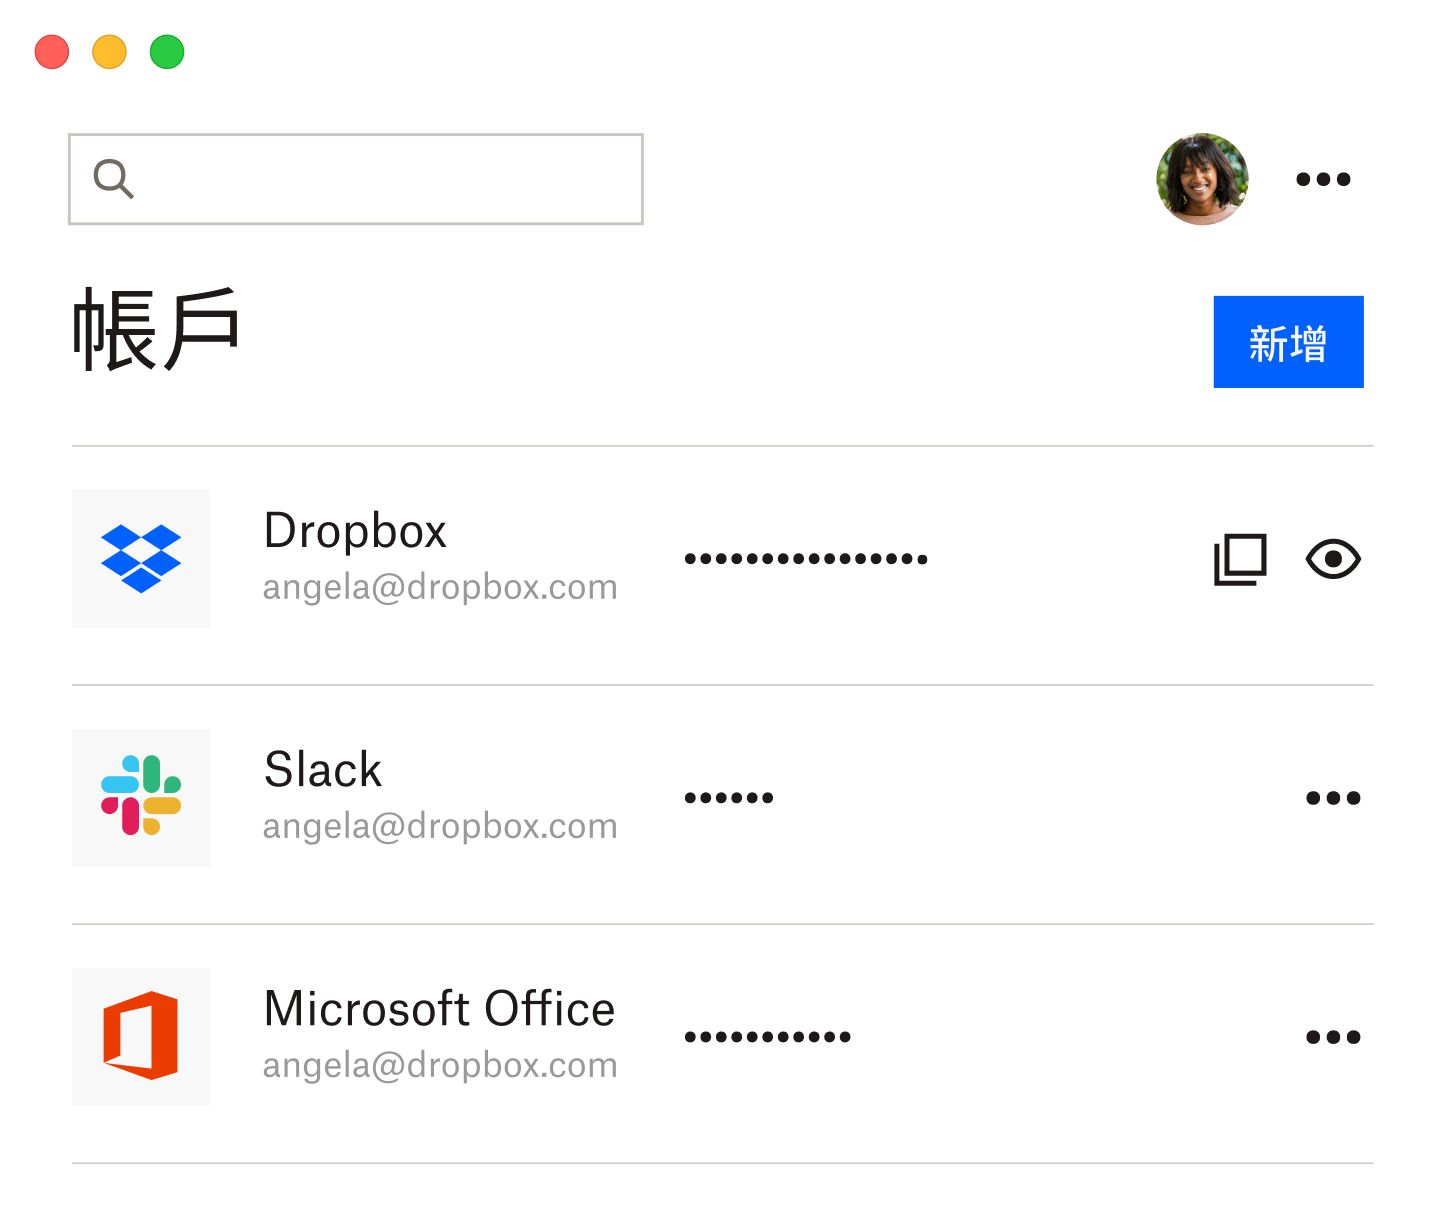 Dropbox 密碼管理員以及含有已儲存 Dropbox、Slack 及 Microsoft Office 密碼的清單